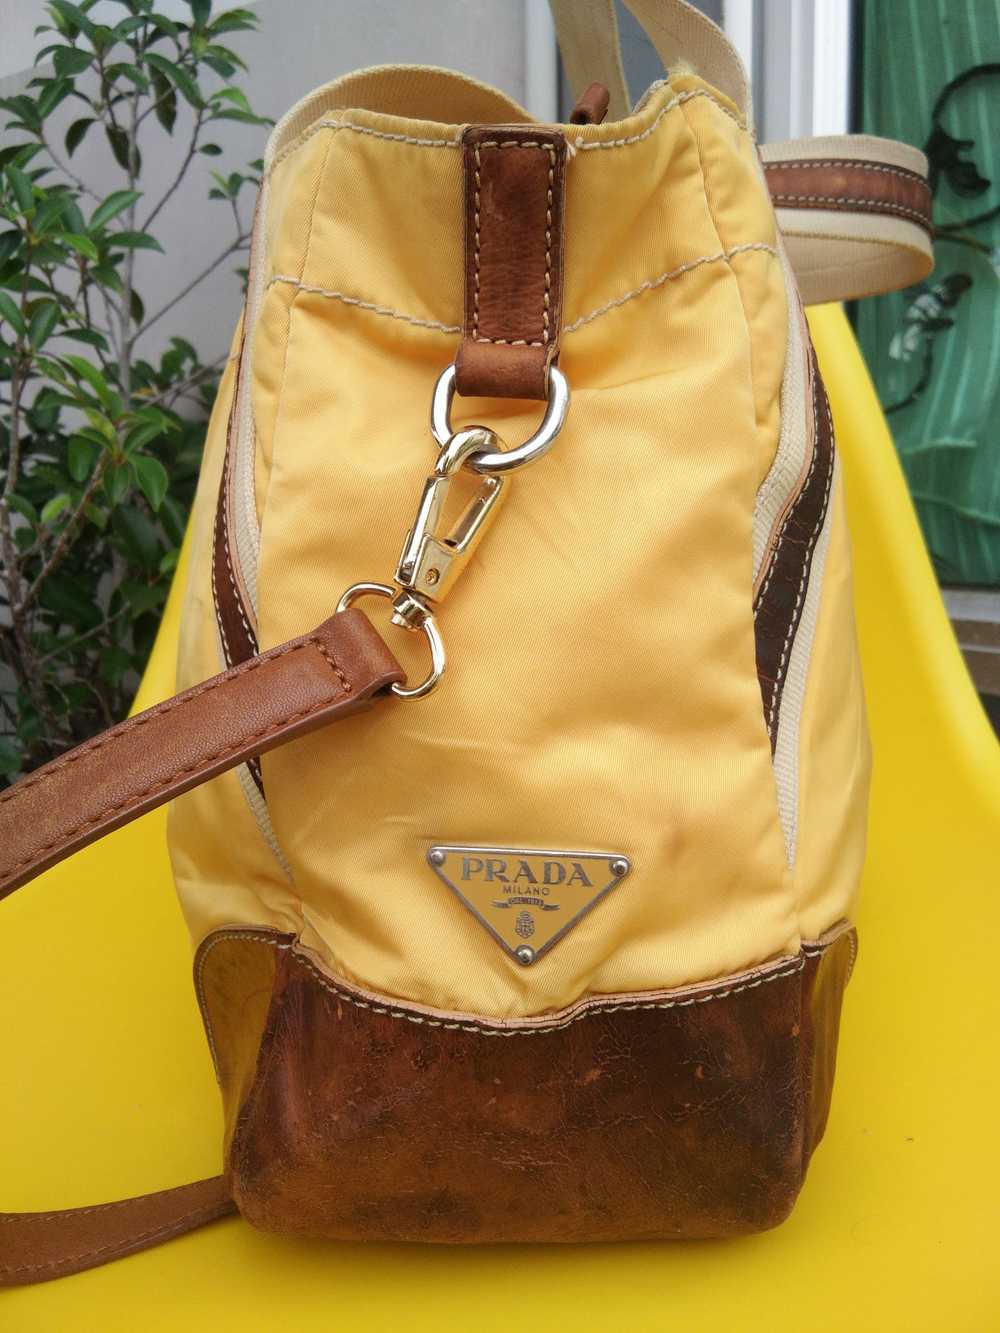 Authentic × Prada Authentic Prada Bag Tote Bag - image 4